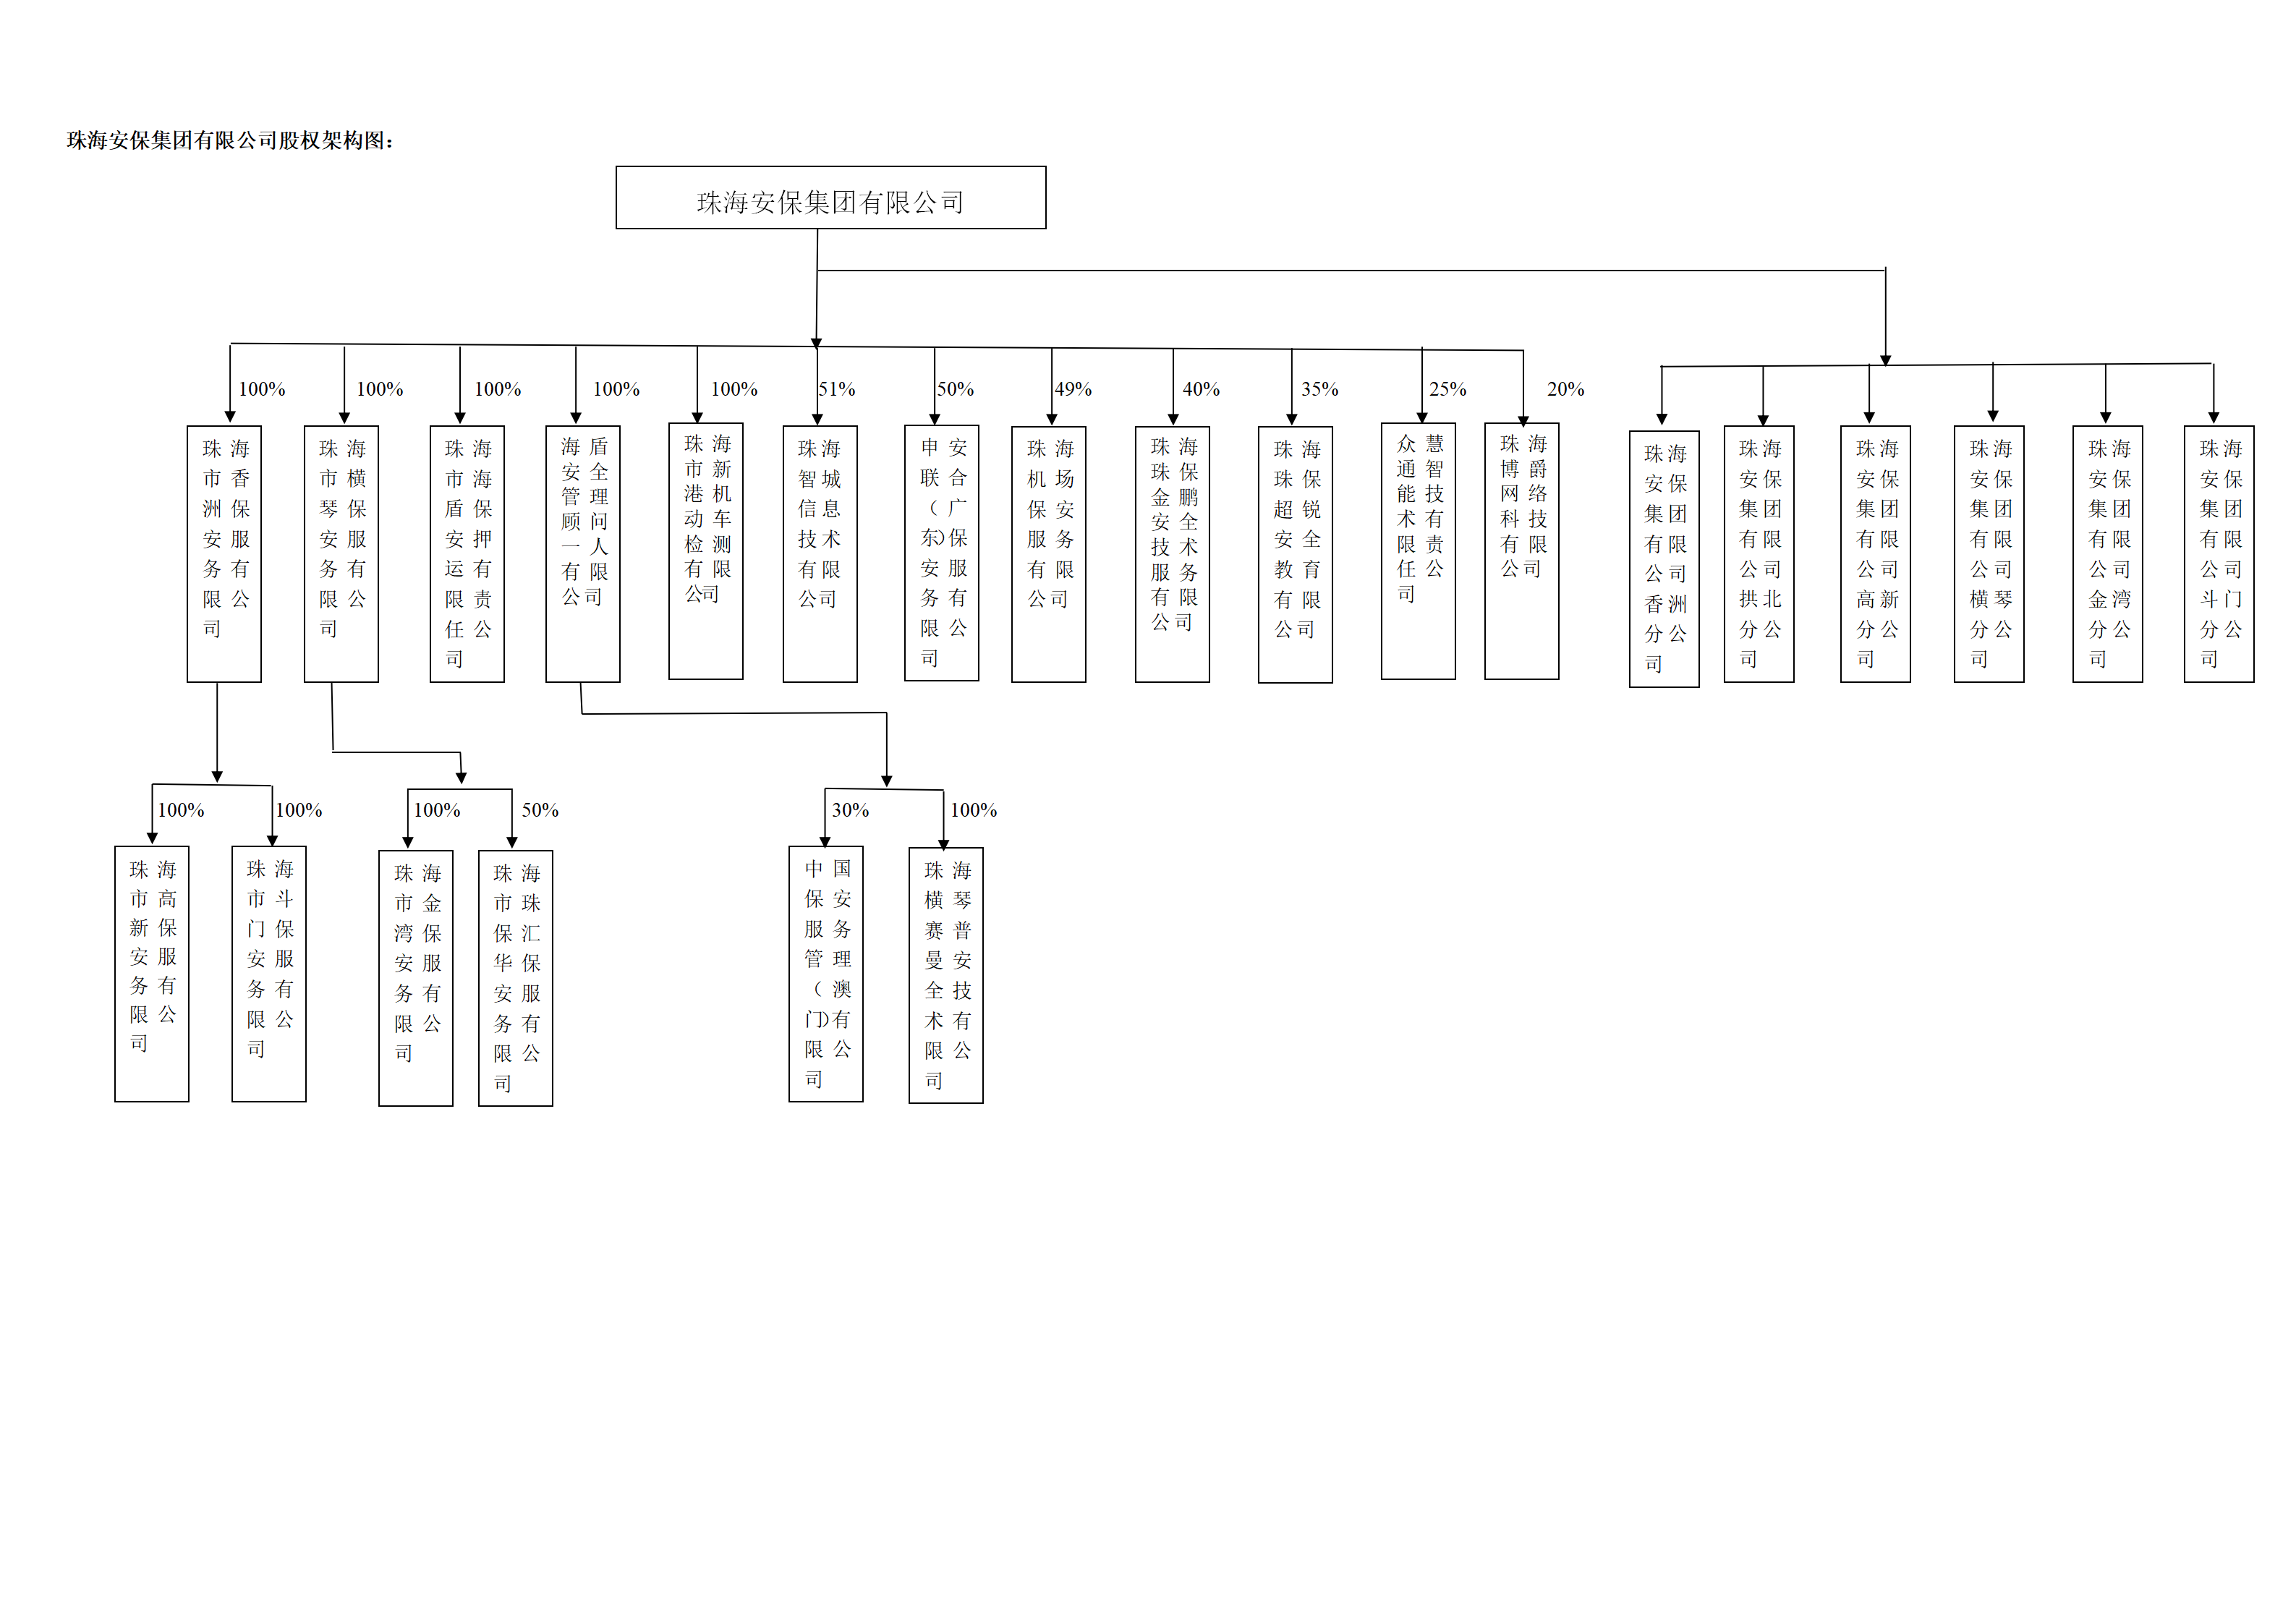 凯发注册手机版官网集团有限公司组织结构架构图2021.11+分公司_01.png